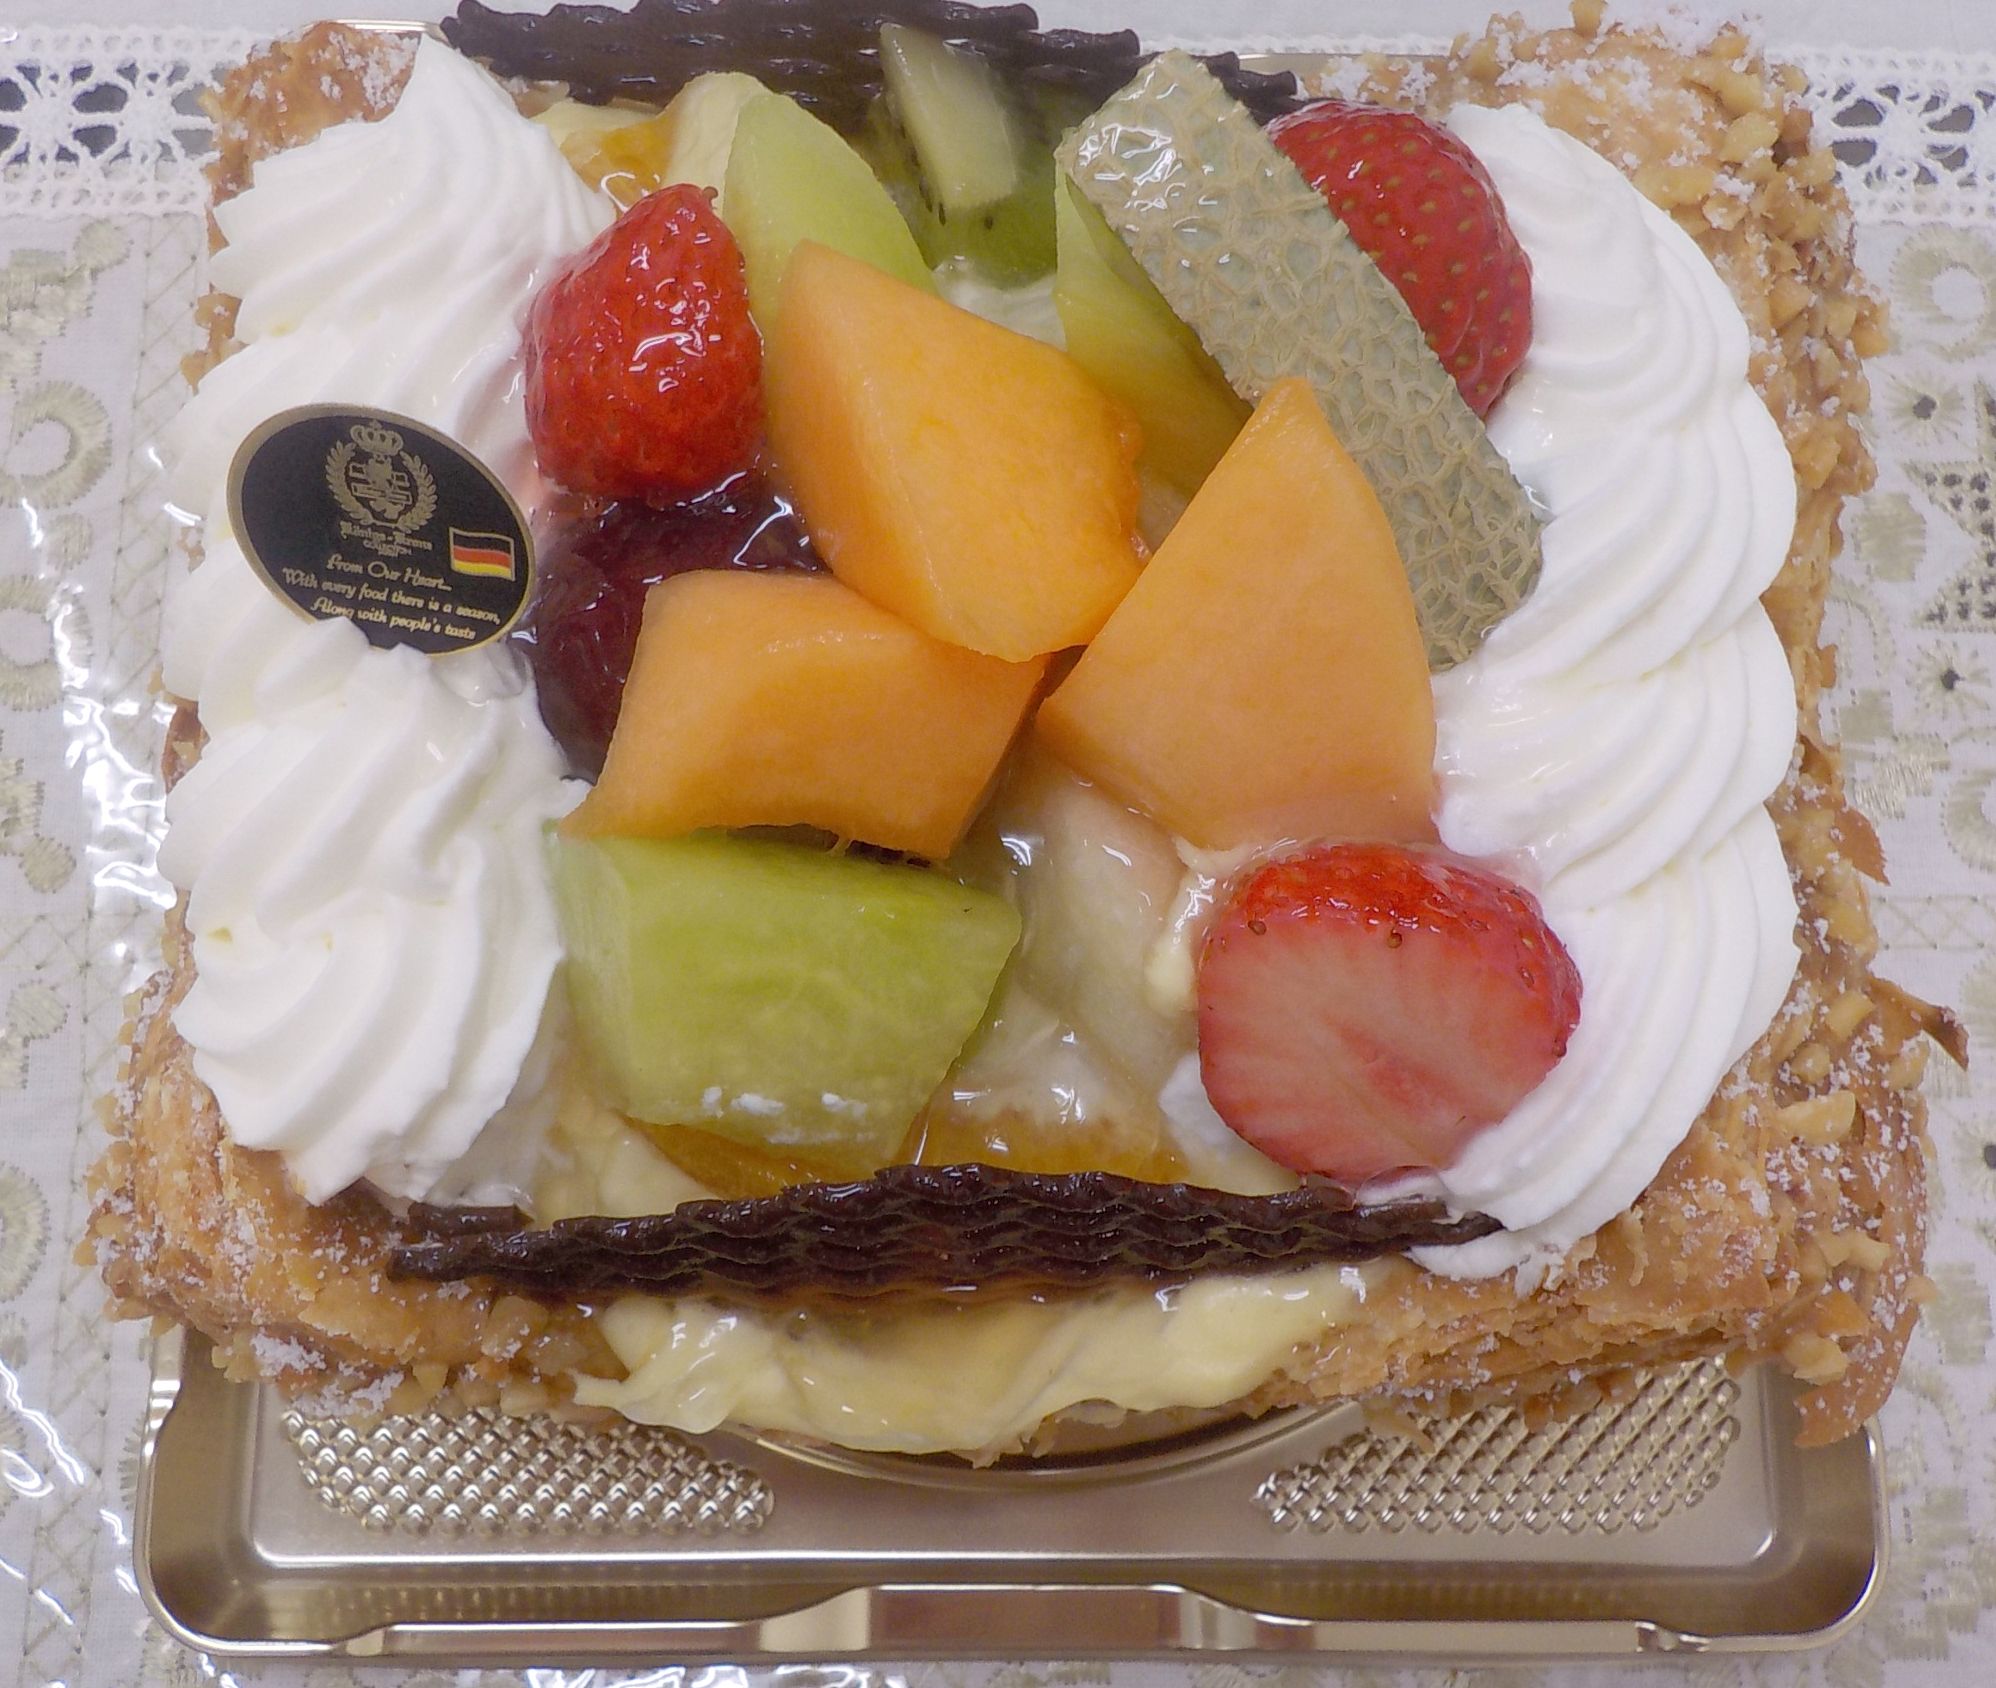 ケーニヒスクローネのフルーツパイケーキとホールチーズケーキ 大阪 奈良グルメのブログ ミシュランごっこ